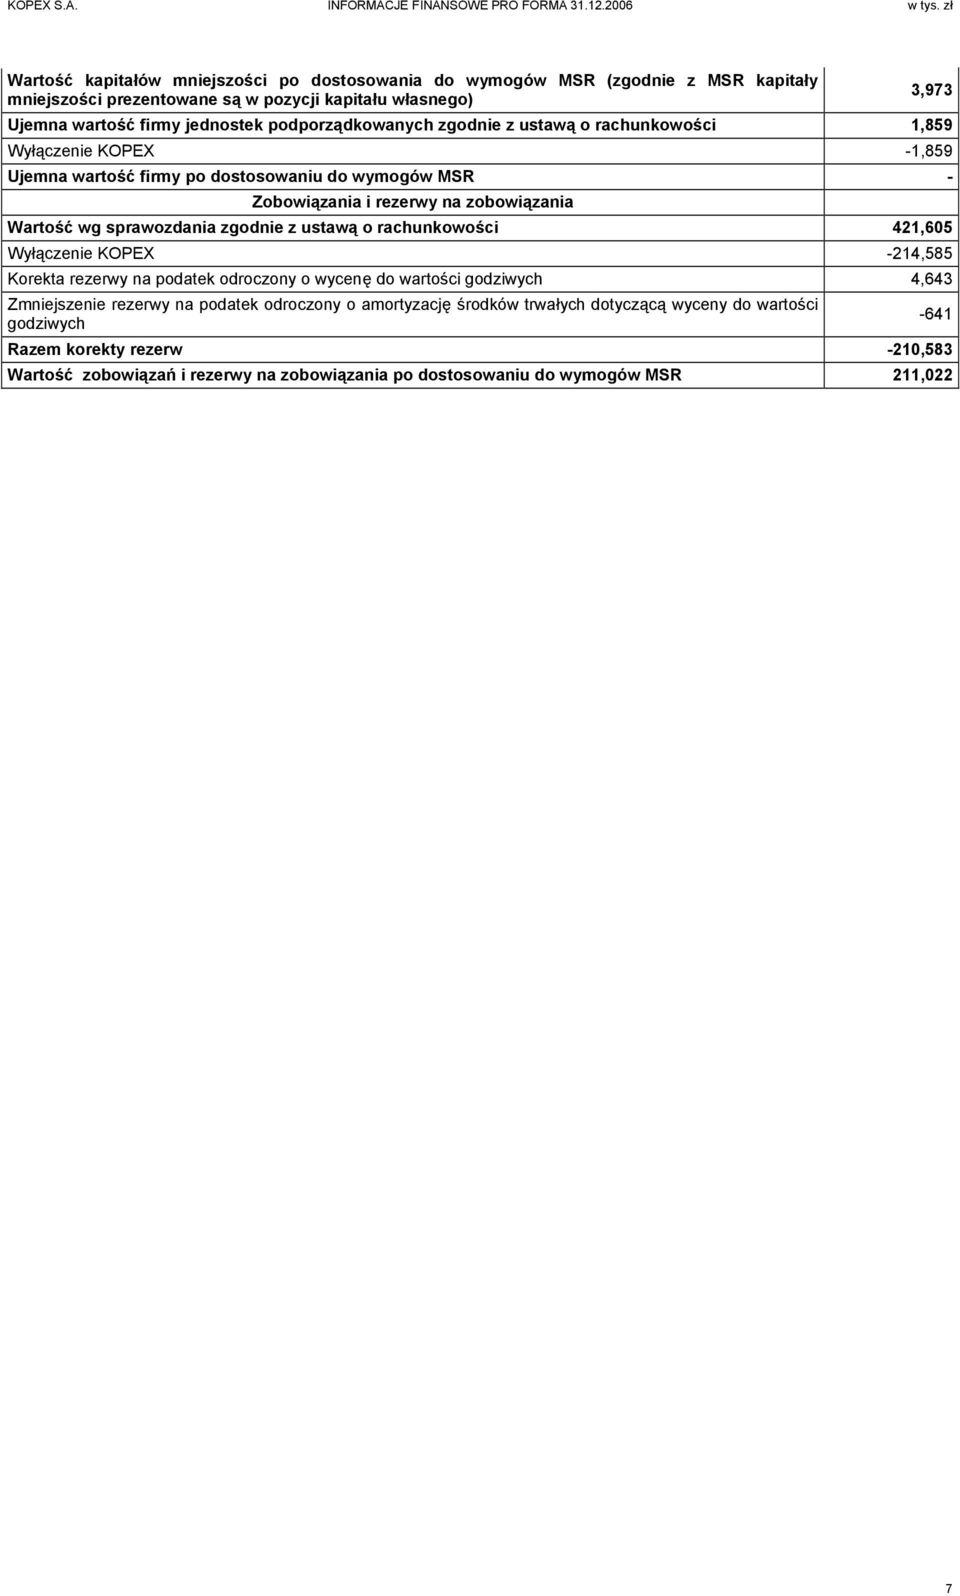 sprawozdania zgodnie z ustawą o rachunkowości 421,605 Wyłączenie KOPEX -214,585 Korekta rezerwy na podatek odroczony o wycenę do wartości godziwych 4,643 Zmniejszenie rezerwy na podatek